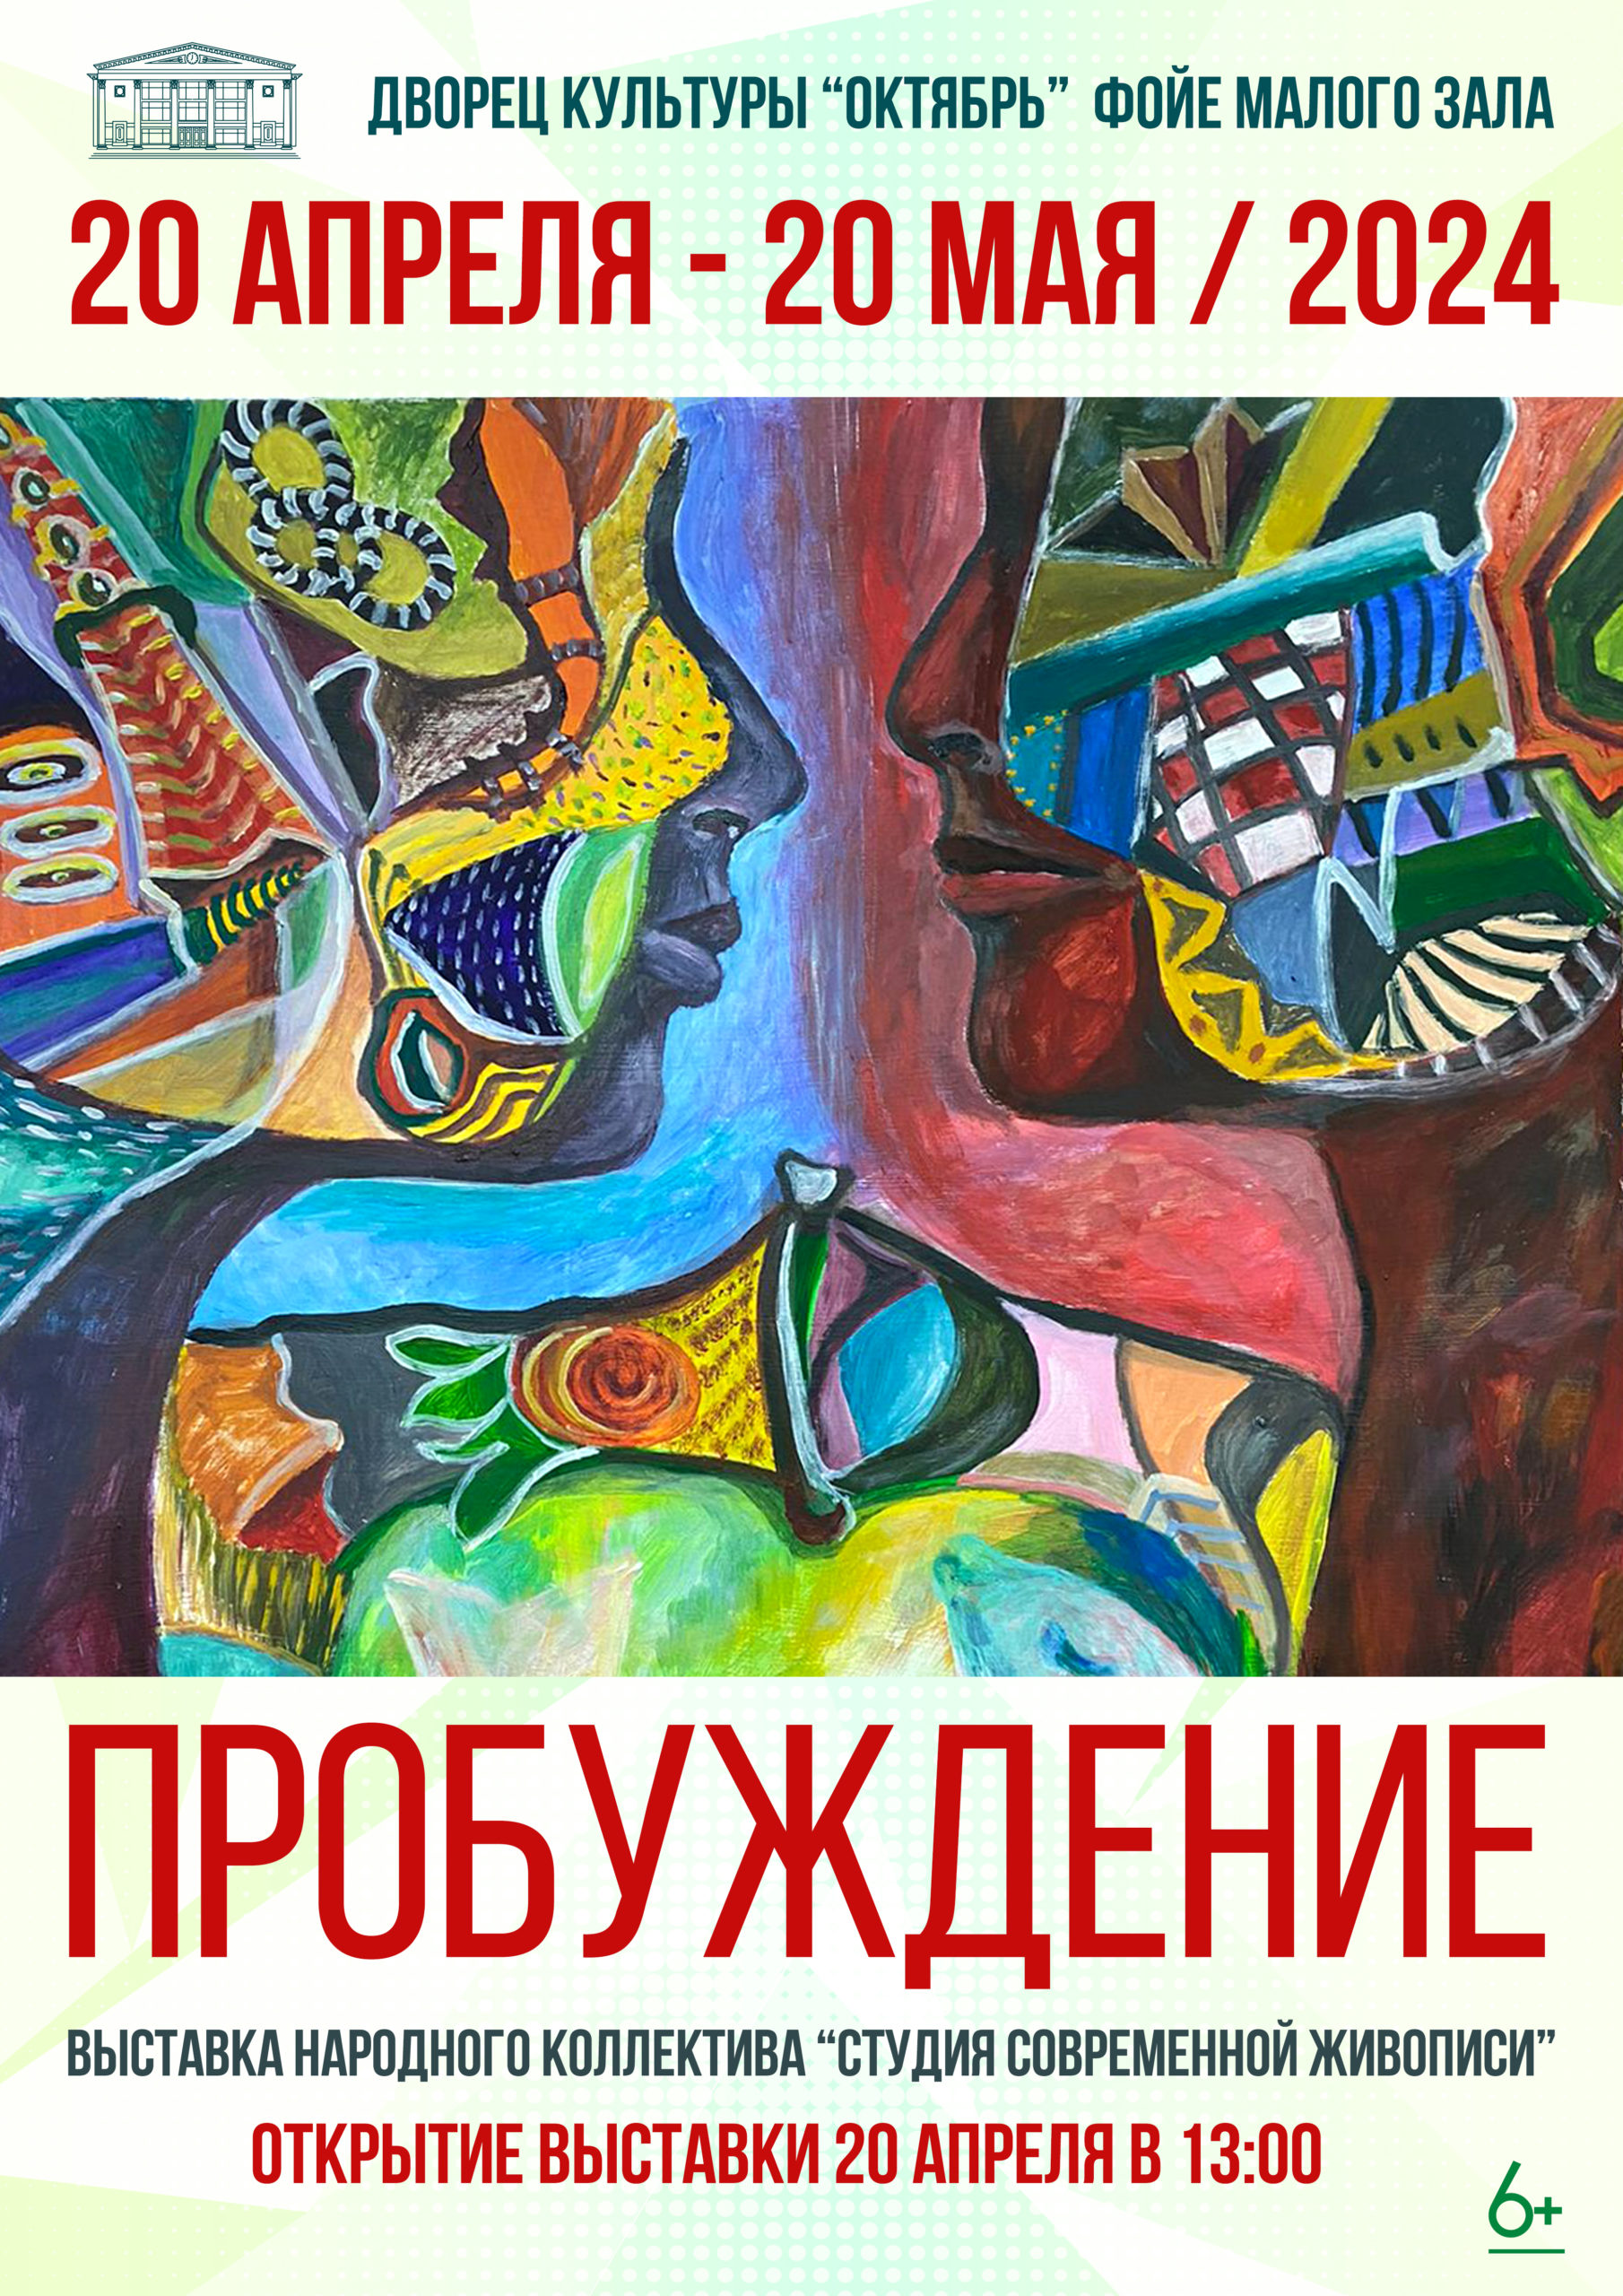 «ПРОБУЖДЕНИЕ» Выставка народного коллектива «Студия современной живописи»